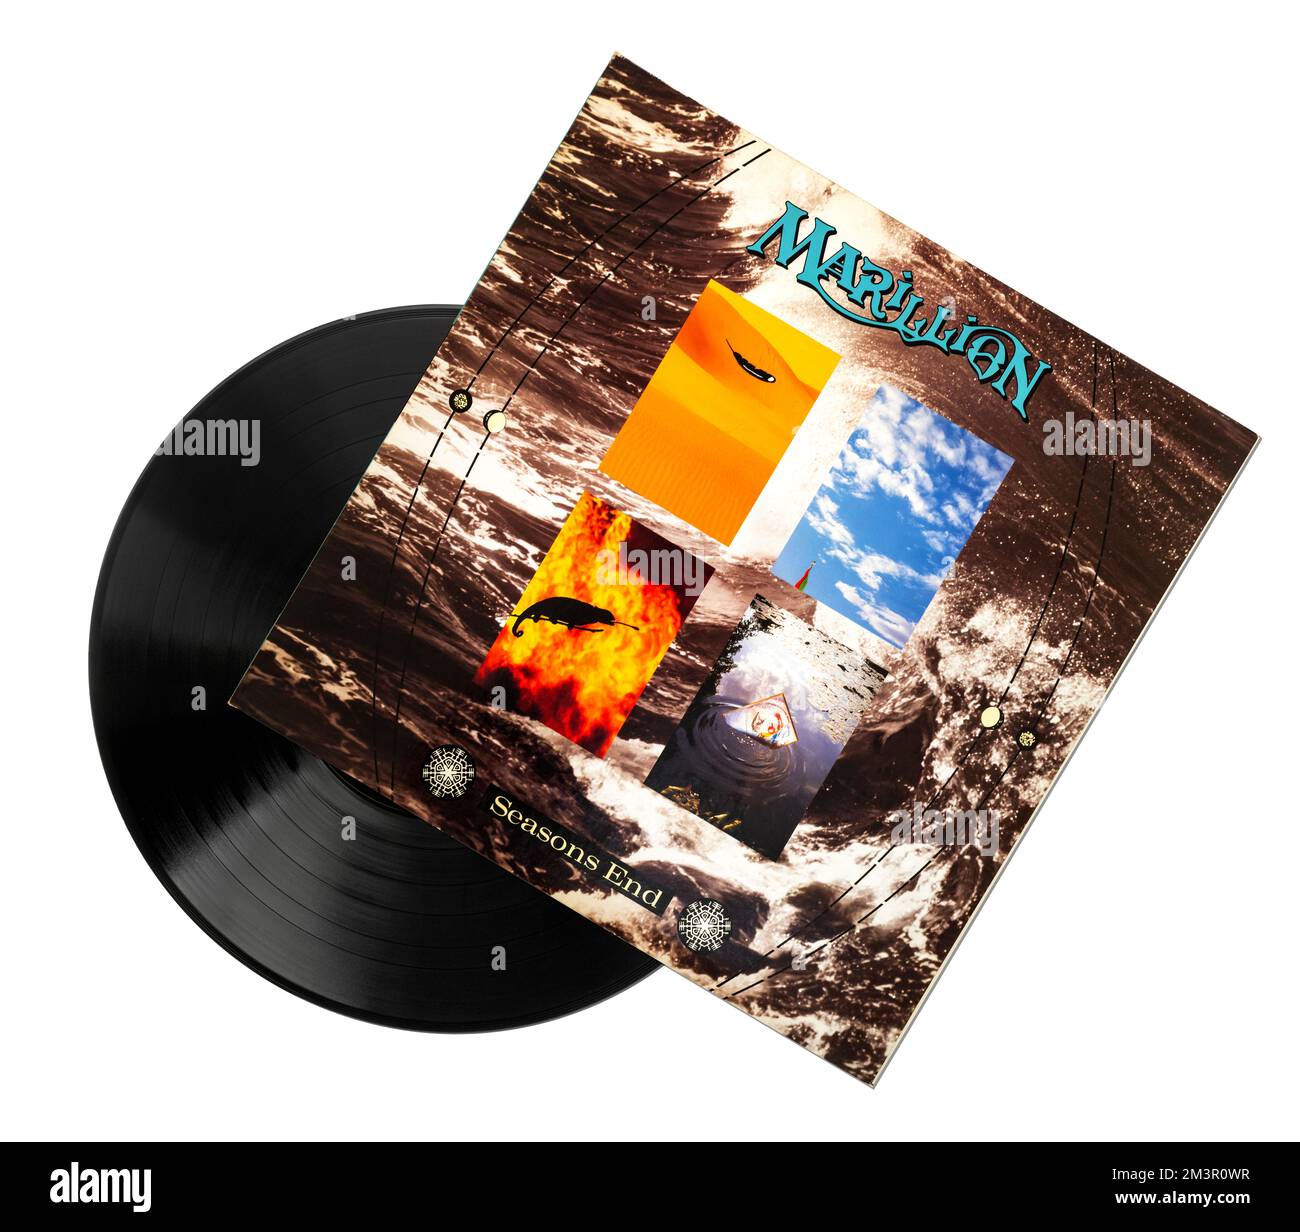 Seasons End è il quinto album in studio della band progressive rock britannica Marillion. Fu pubblicato nel settembre 1989 come primo album dei The Hogarth Foto Stock